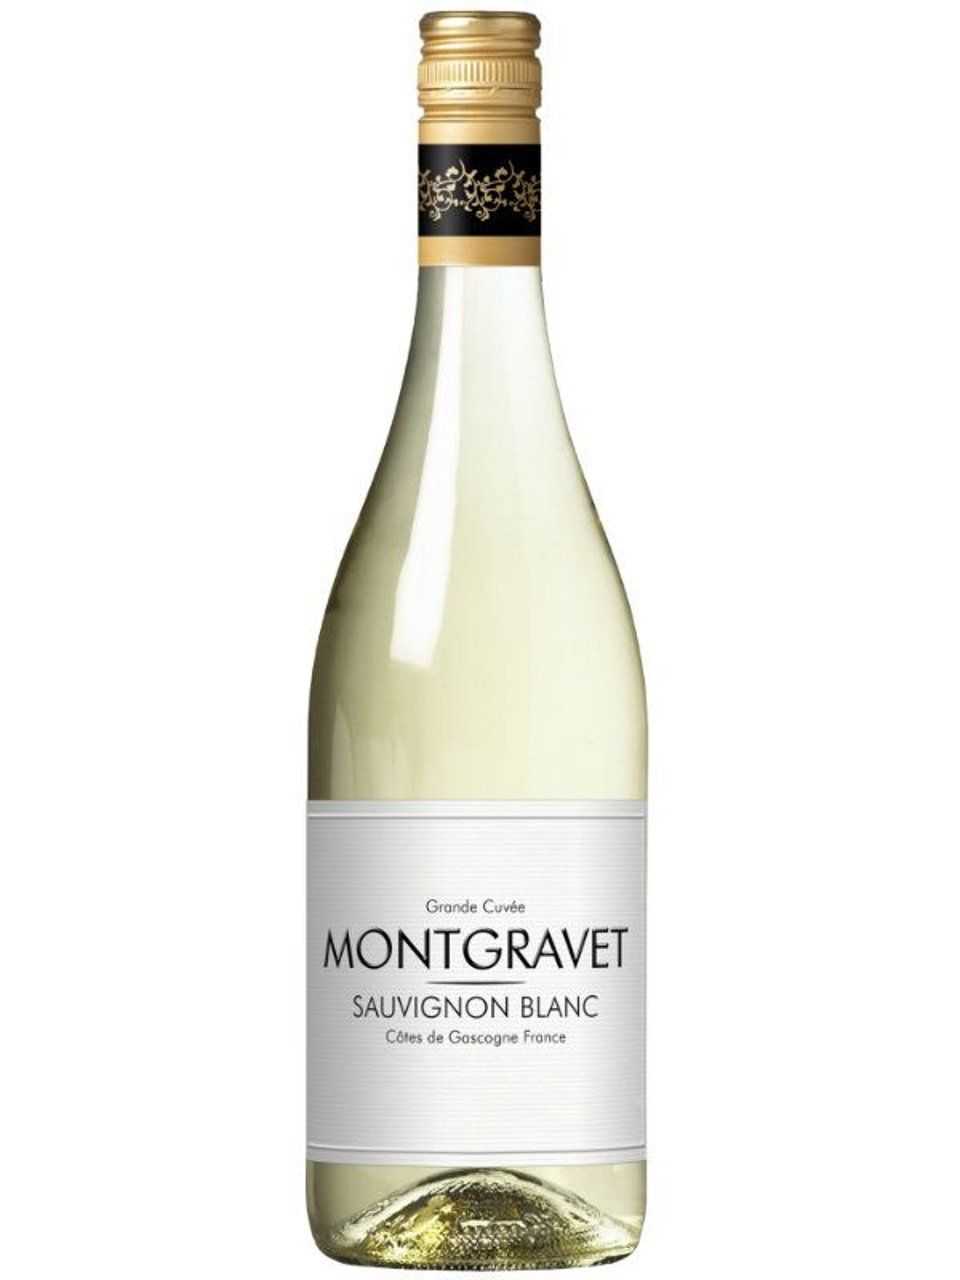 Montgravet Sauvignon Blanc Côtes de Gascogne